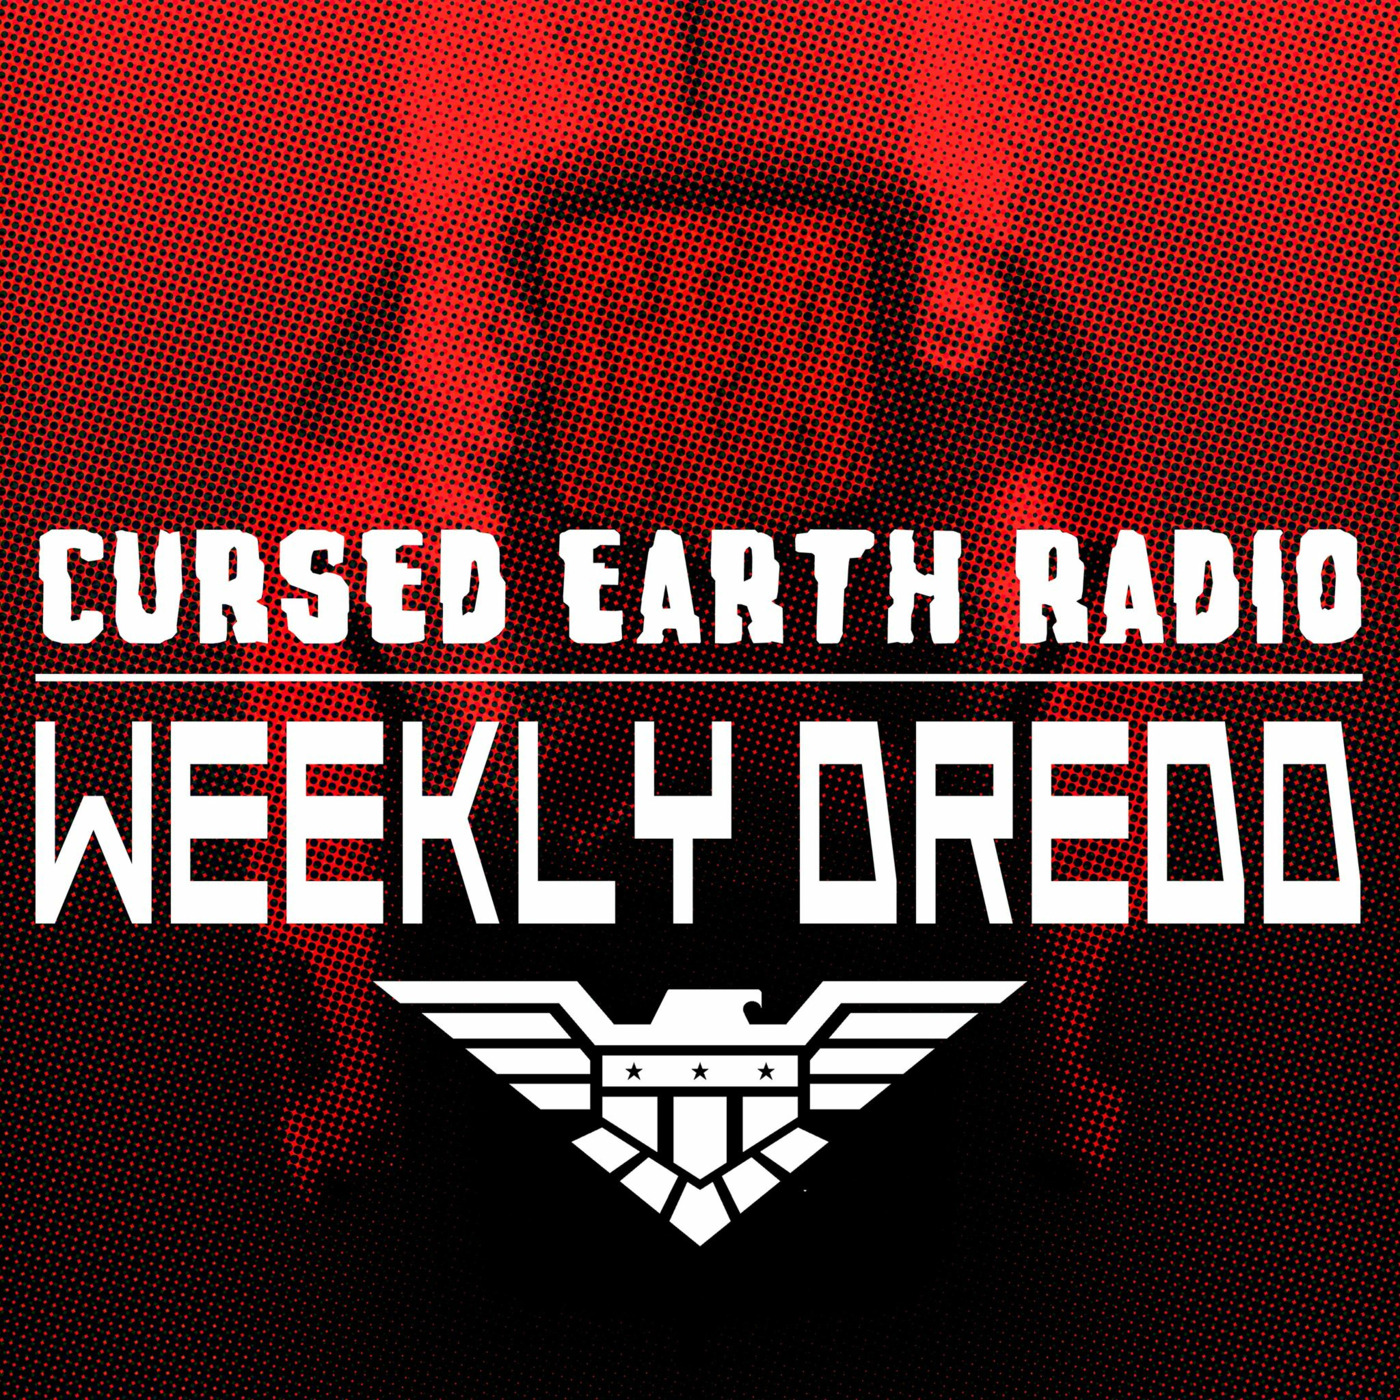 Episode 124: Weekly Dredd -Prog 2250 - THE JUMPING ON PROG!